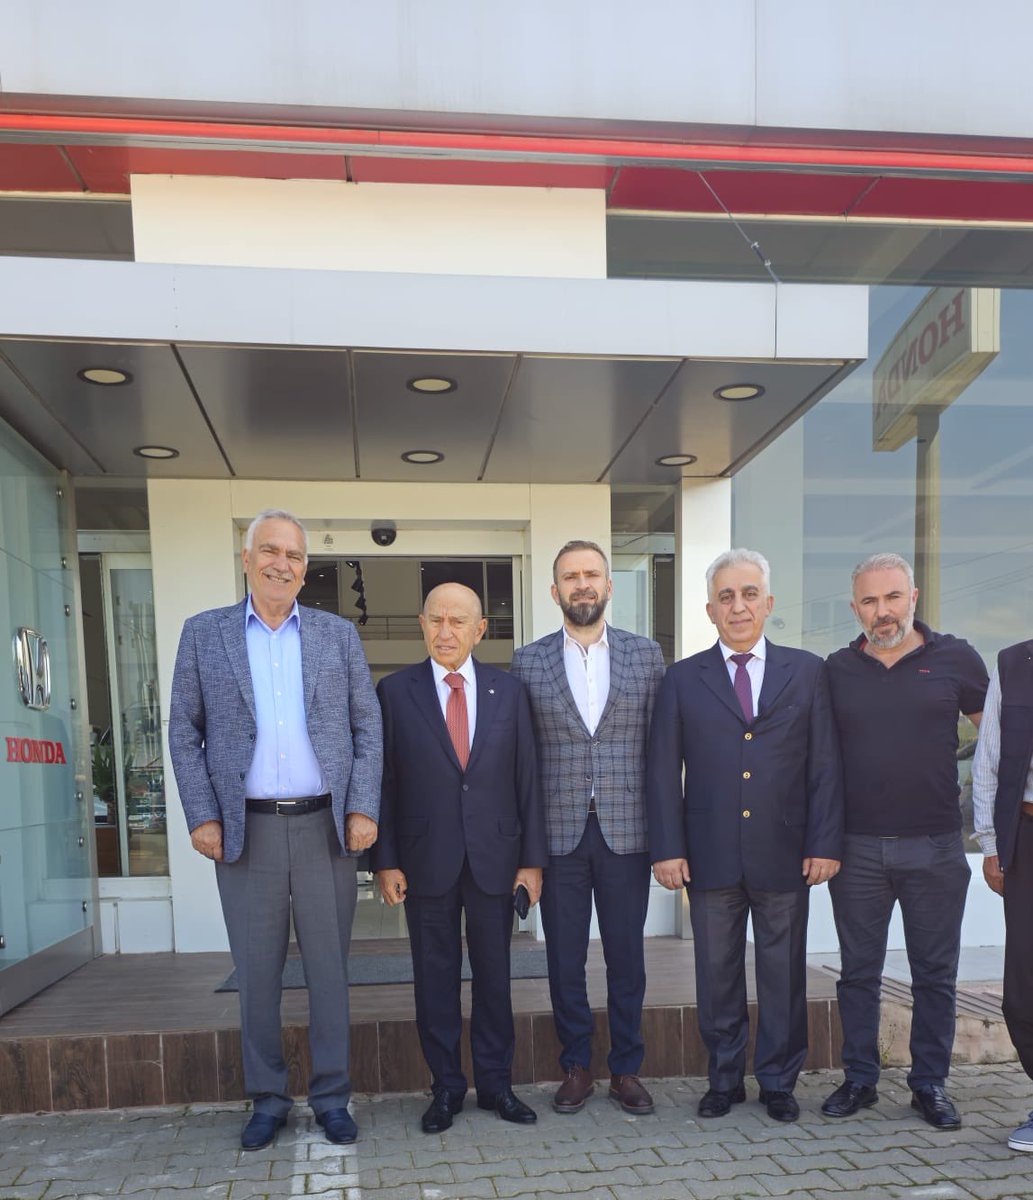 Ziyaretiyle bizleri onurlandıran Limak holding yönetim kurulu başkanı sayın Nihat Özdemir başkanıma şükranlarımı sunarım